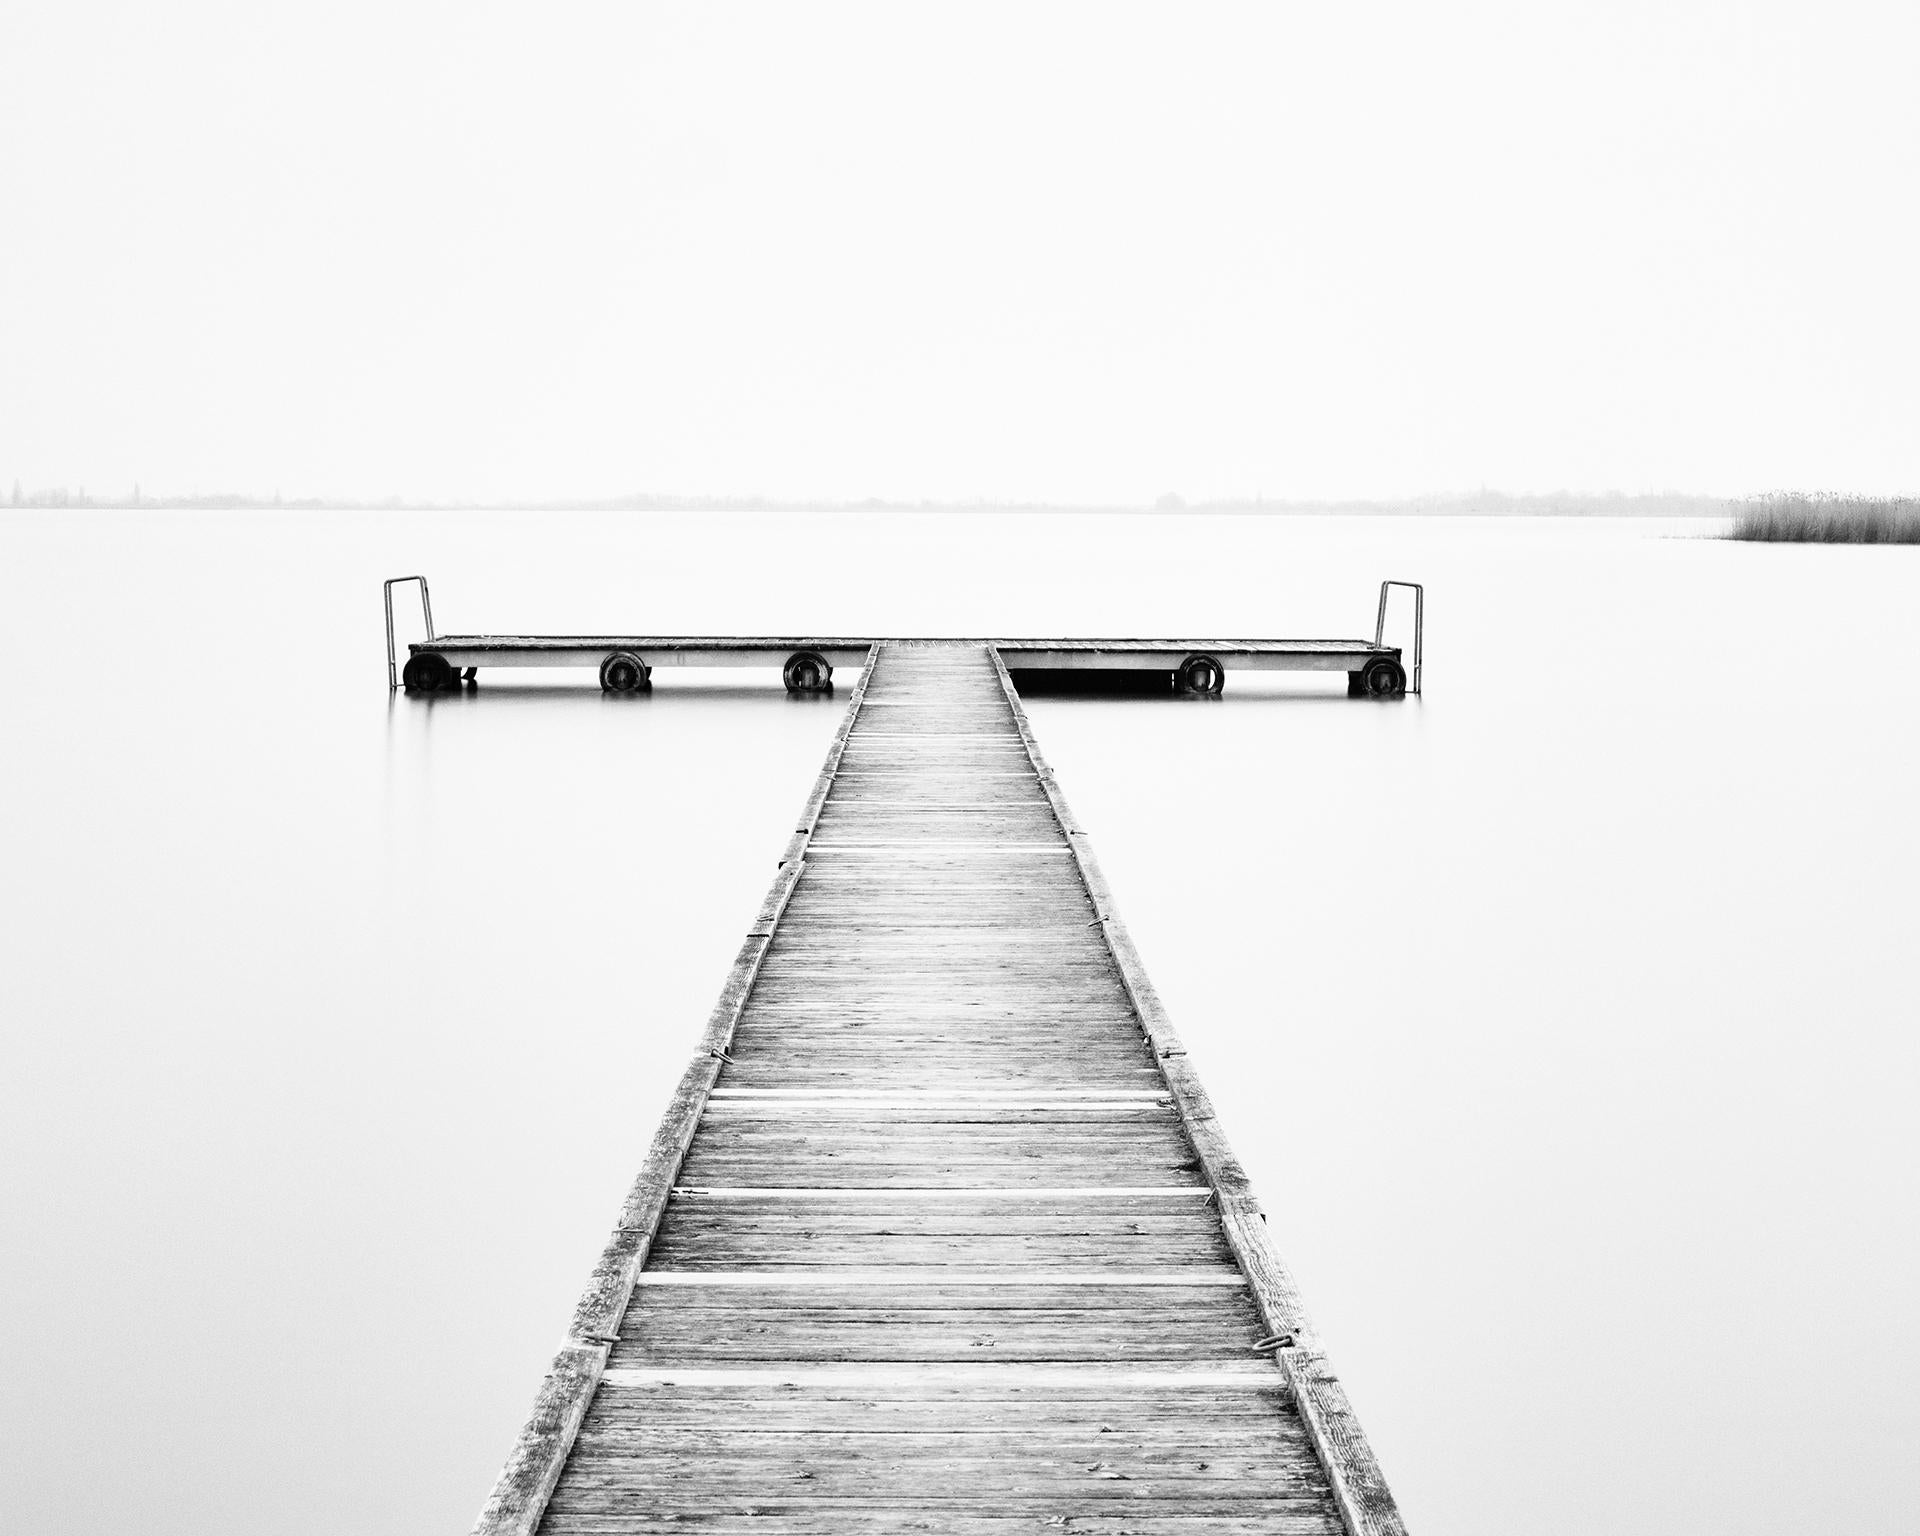 Wood Pier, Österreich, zeitgenössische schwarz-weiße Kunstfotografie Landschaft – Photograph von Gerald Berghammer, Ina Forstinger